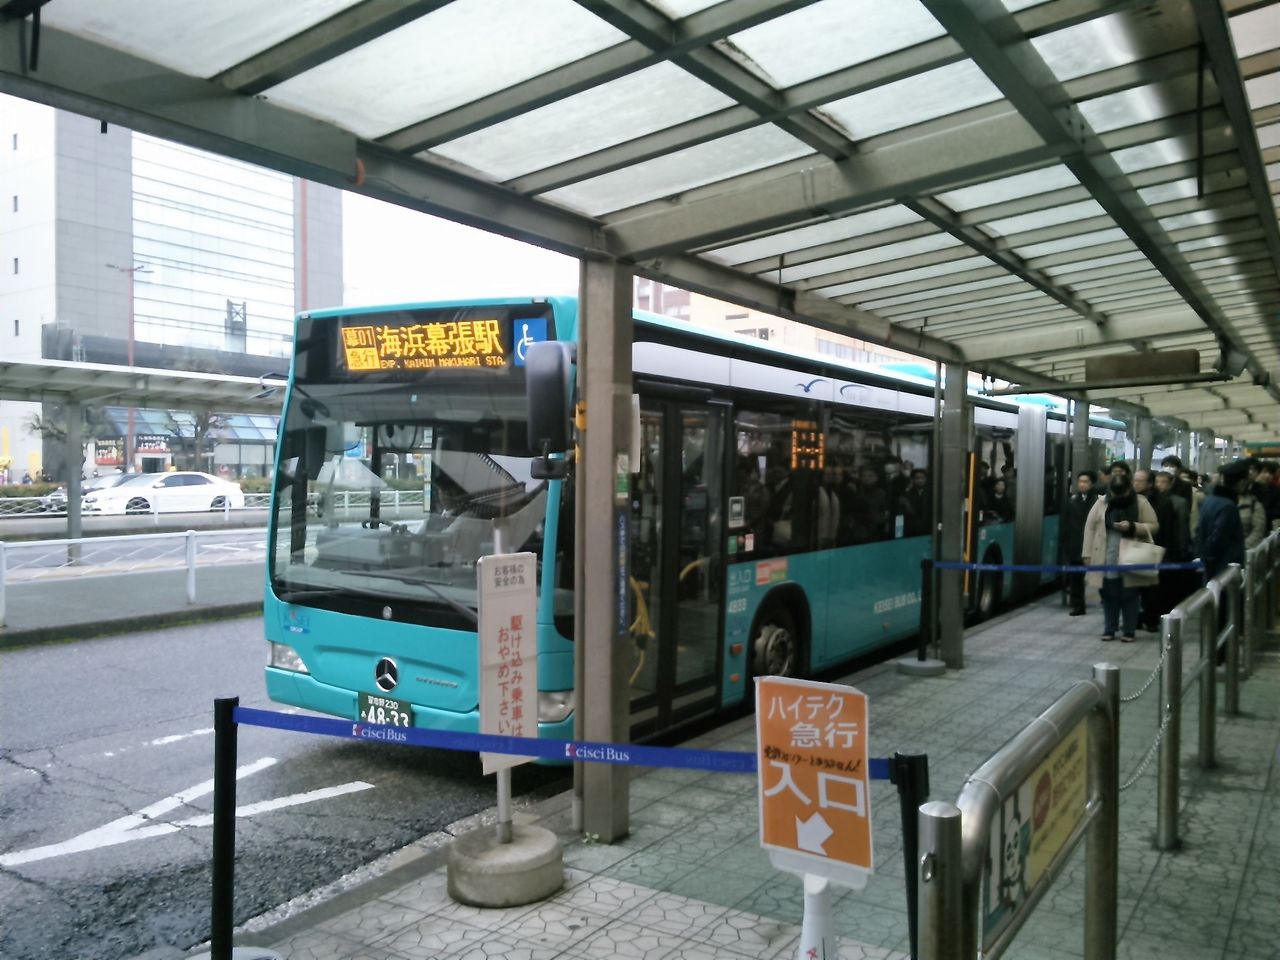 海浜幕張 幕張本郷間のバス輸送改善は可能か その6 朝ラッシュ時の急行 海浜幕張行きに乗車しました Shinoの鉄道ブログ